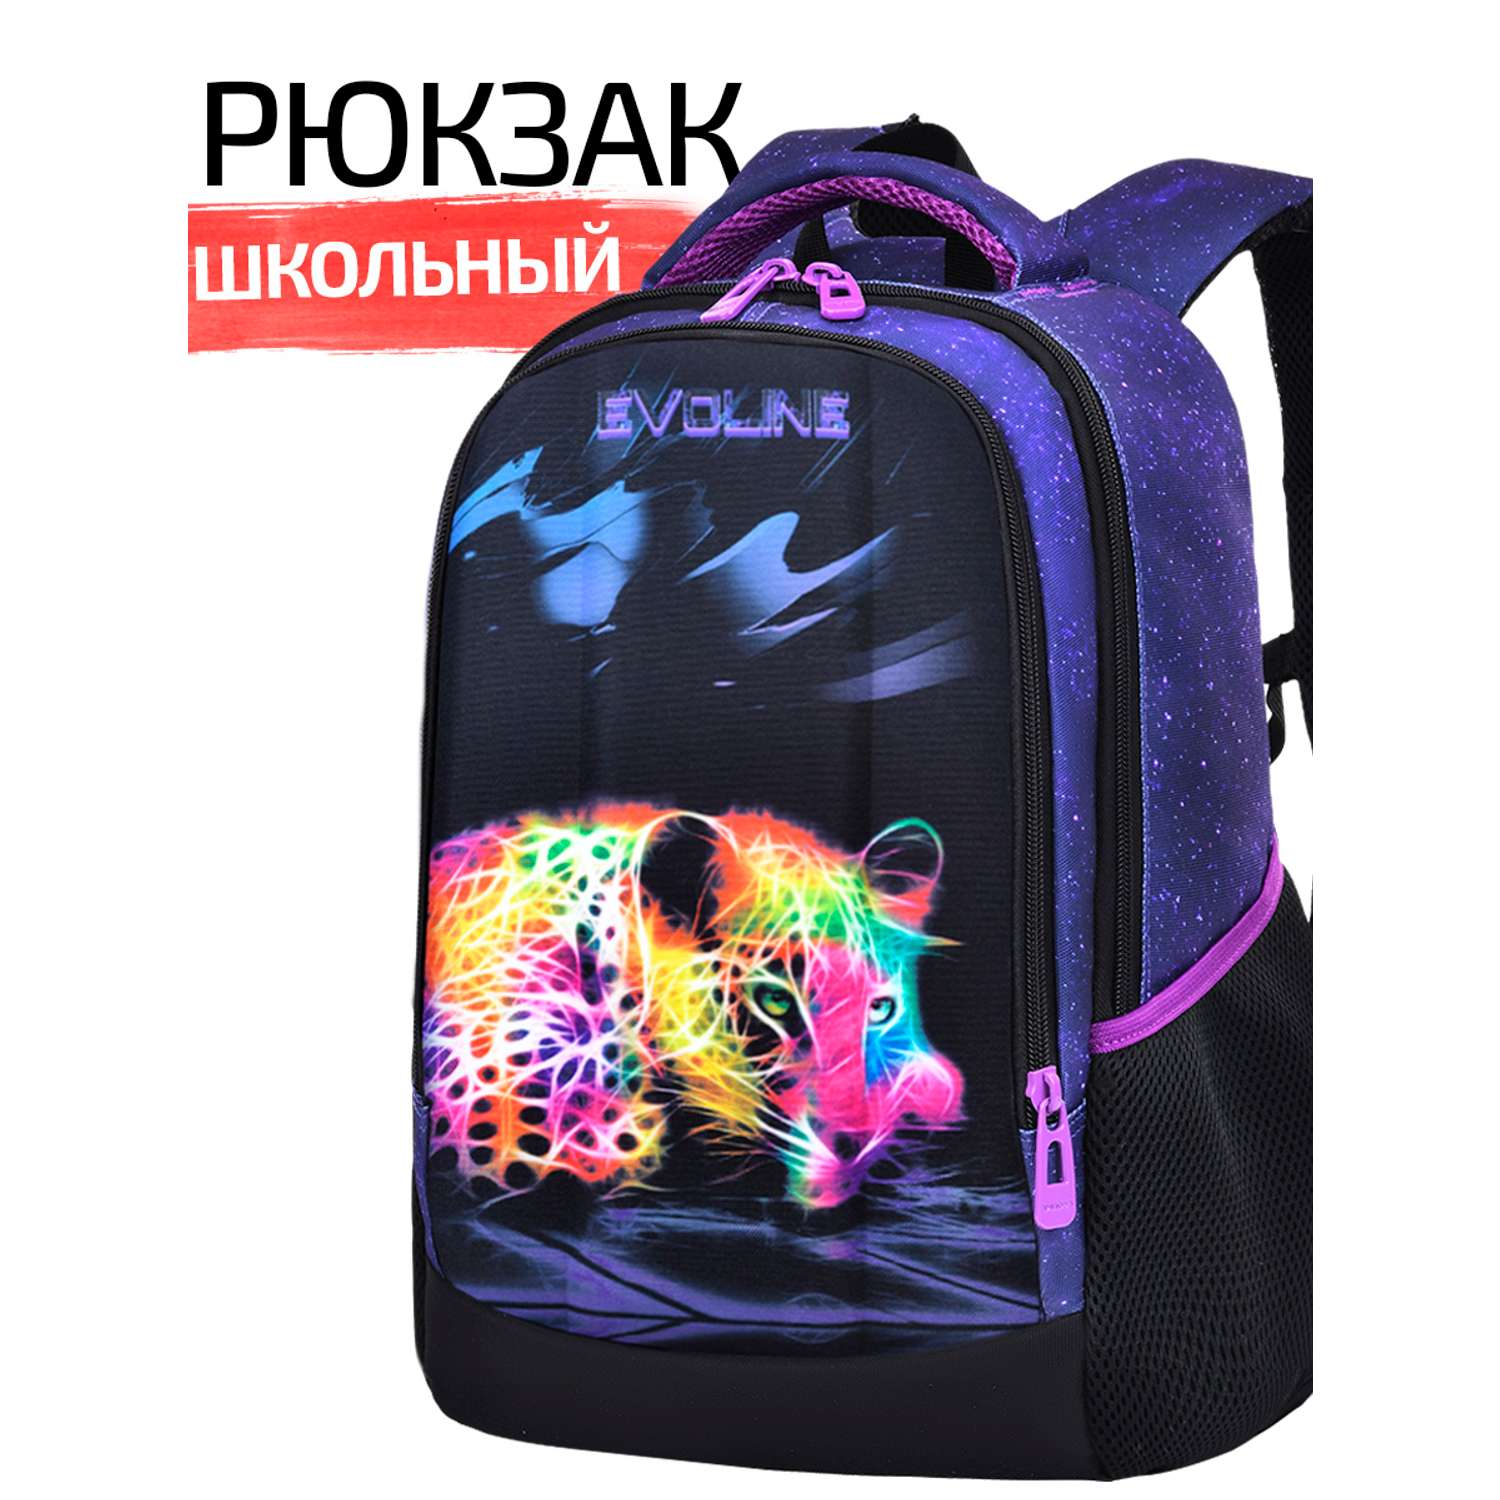 Рюкзак школьный Evoline Черный цветной леопард 41см спинка SKY-LEO-2 - фото 1